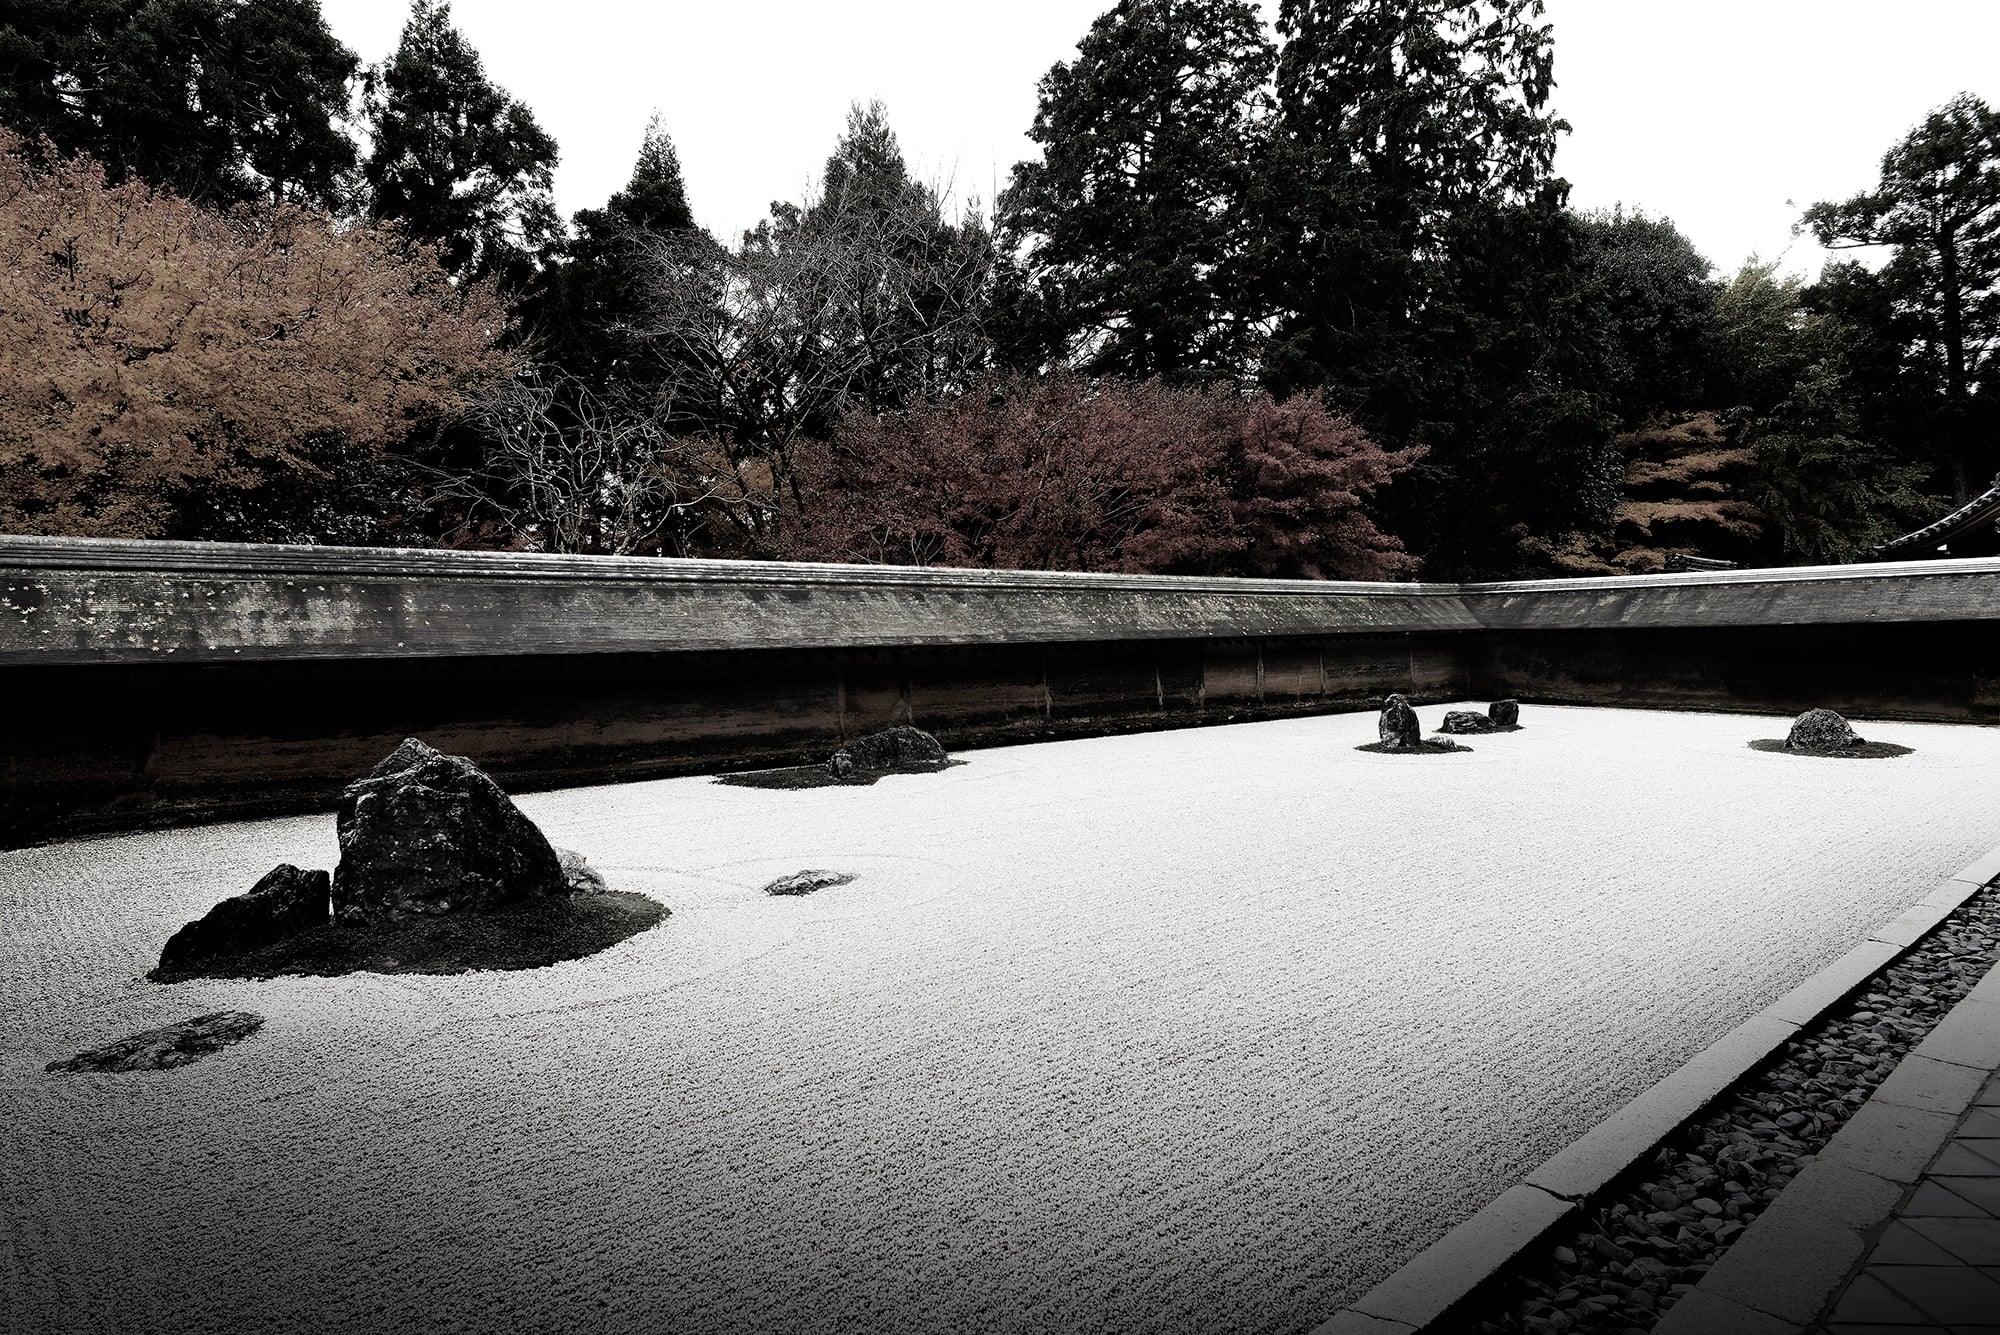 前田所探索的，是日本人审美观的本质。最终，他在龙安寺铺满石子的庭院里发现了“留白”之美。枯山水将“多余之物”隐去，反倒使得生出的留白中蕴涵了无限延伸的自然，这种美看不见，却能“用心感受到”。出自日经设计／广川淳哉著《MAZDA DESIGN 　DESIGN BRANDING BUSINESS》日经BP社刊。